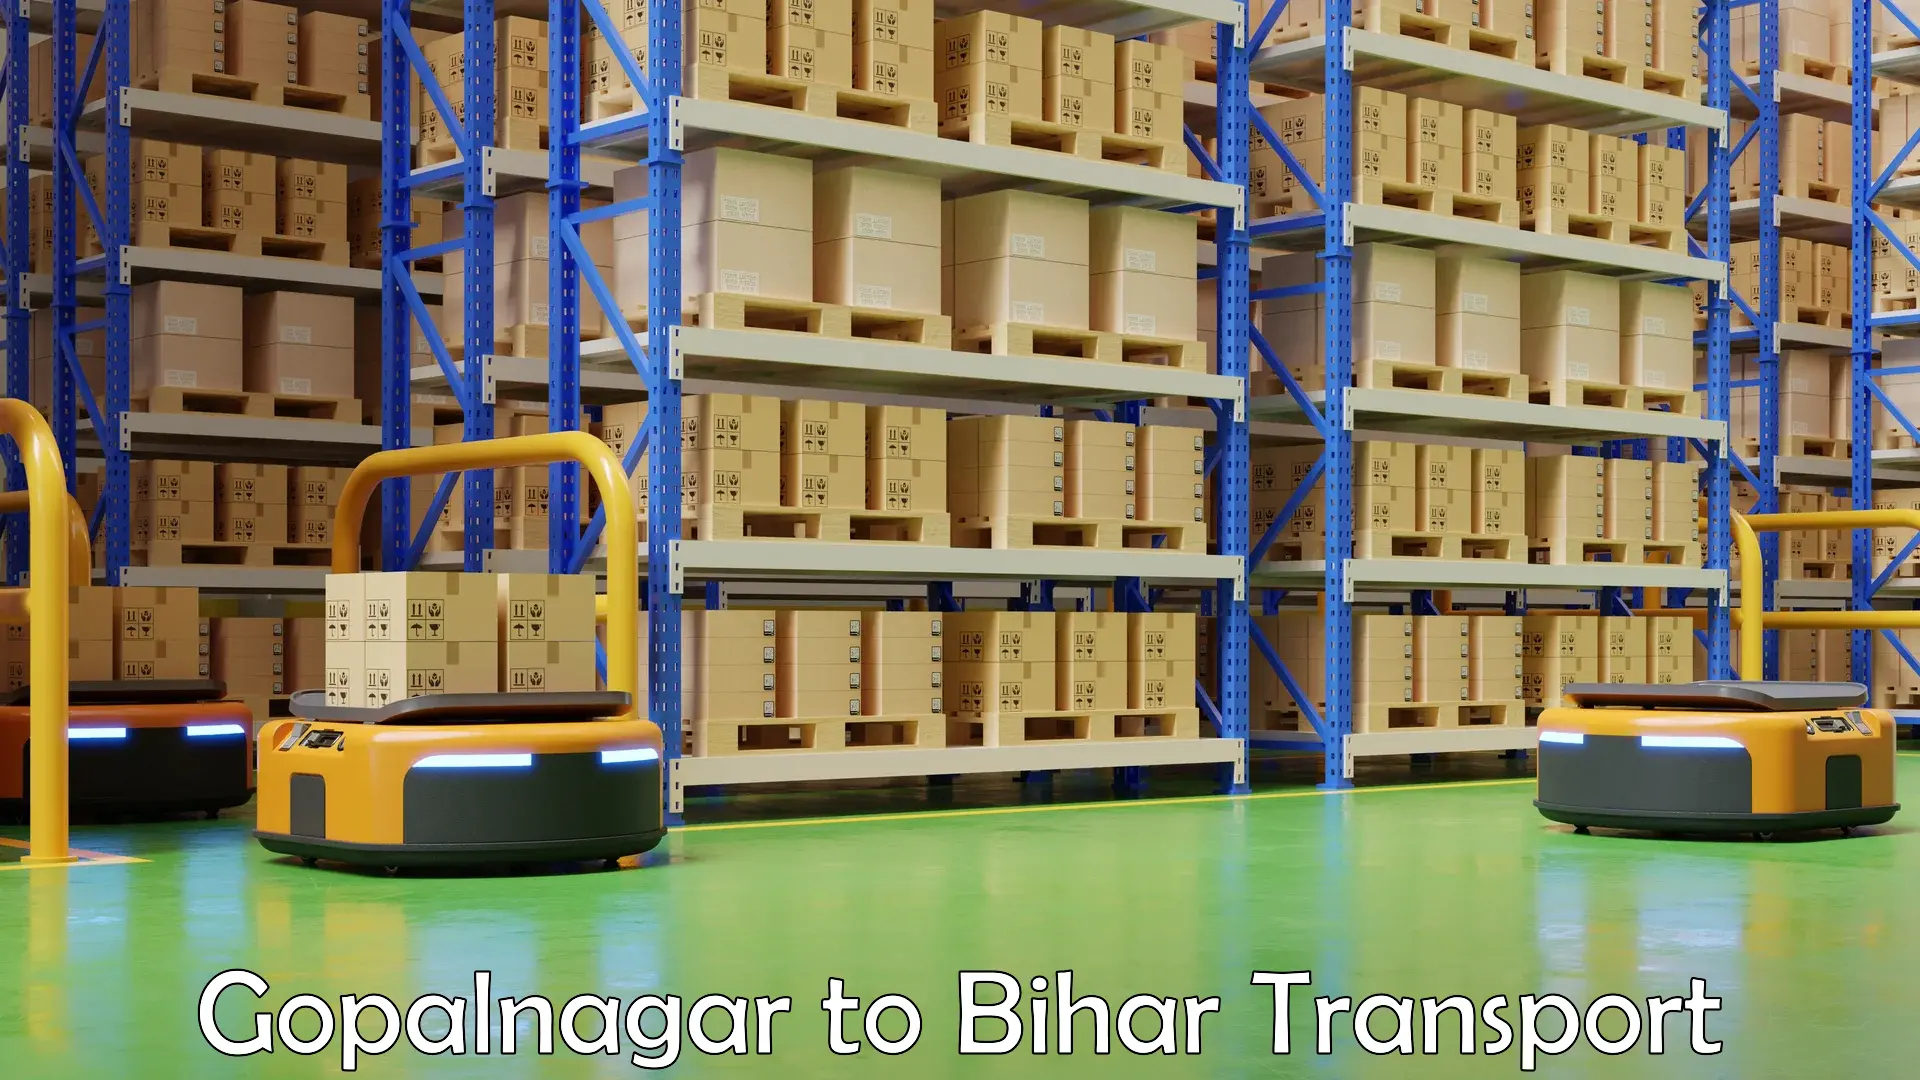 Container transport service Gopalnagar to Vaishali